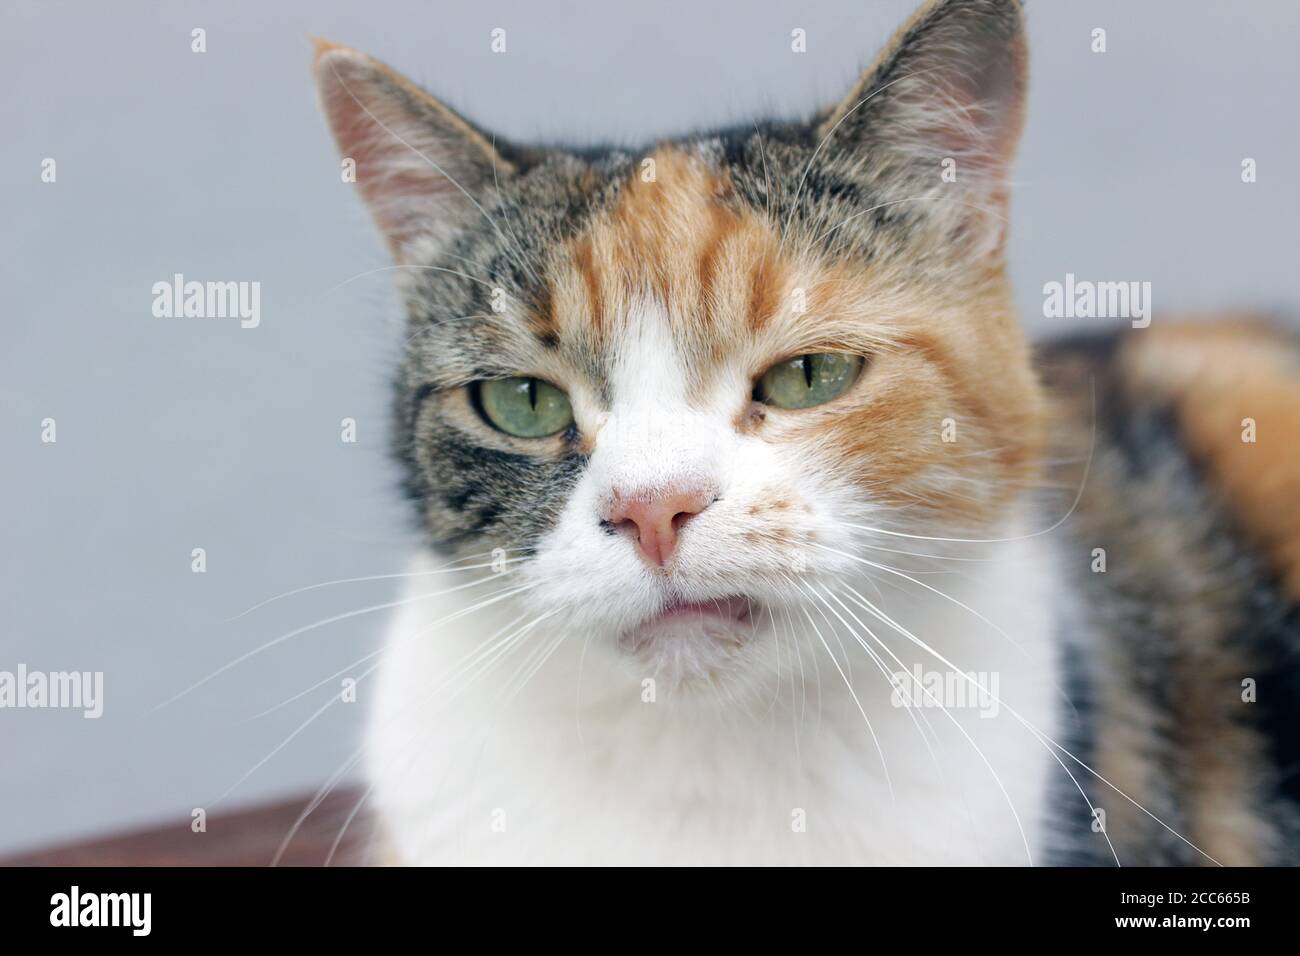 Gros plan d'un vrai chat calico grincheux avec une expression du visage retée naturelle Banque D'Images